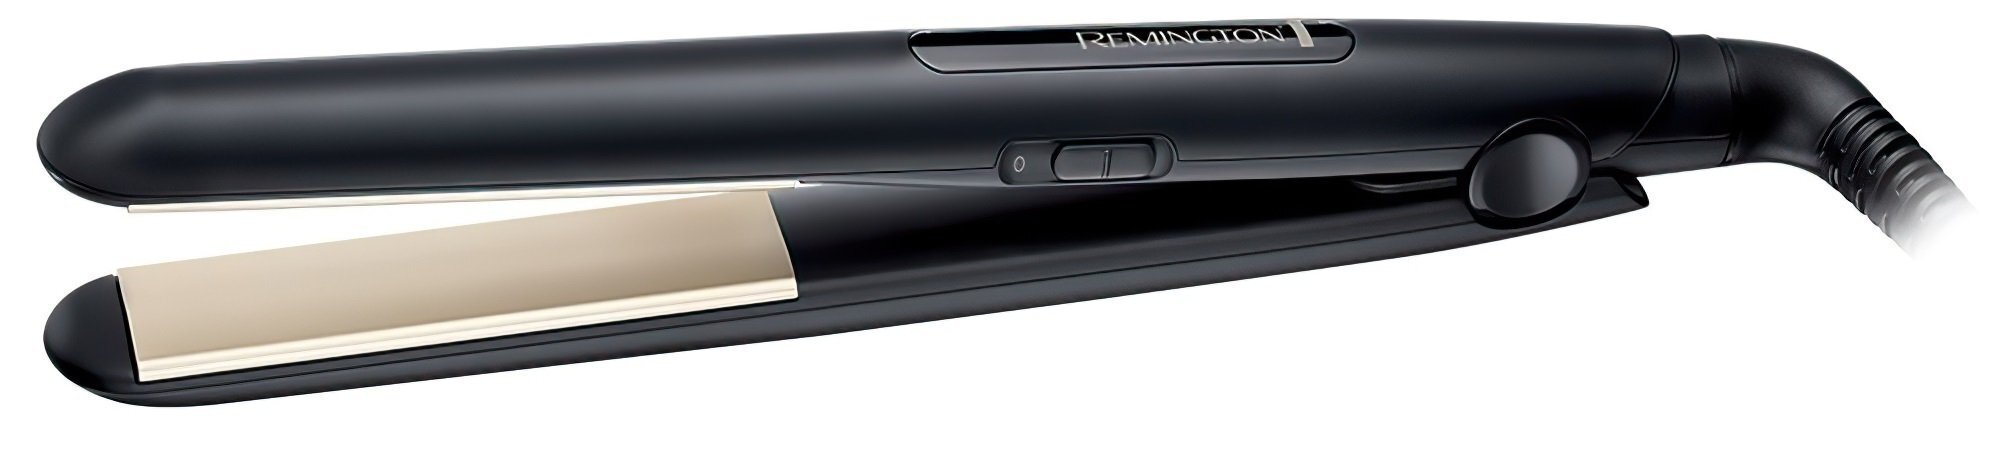 Щипцы-выпрямитель для укладки волос Remington S1510 E51 (S1510) фото 1